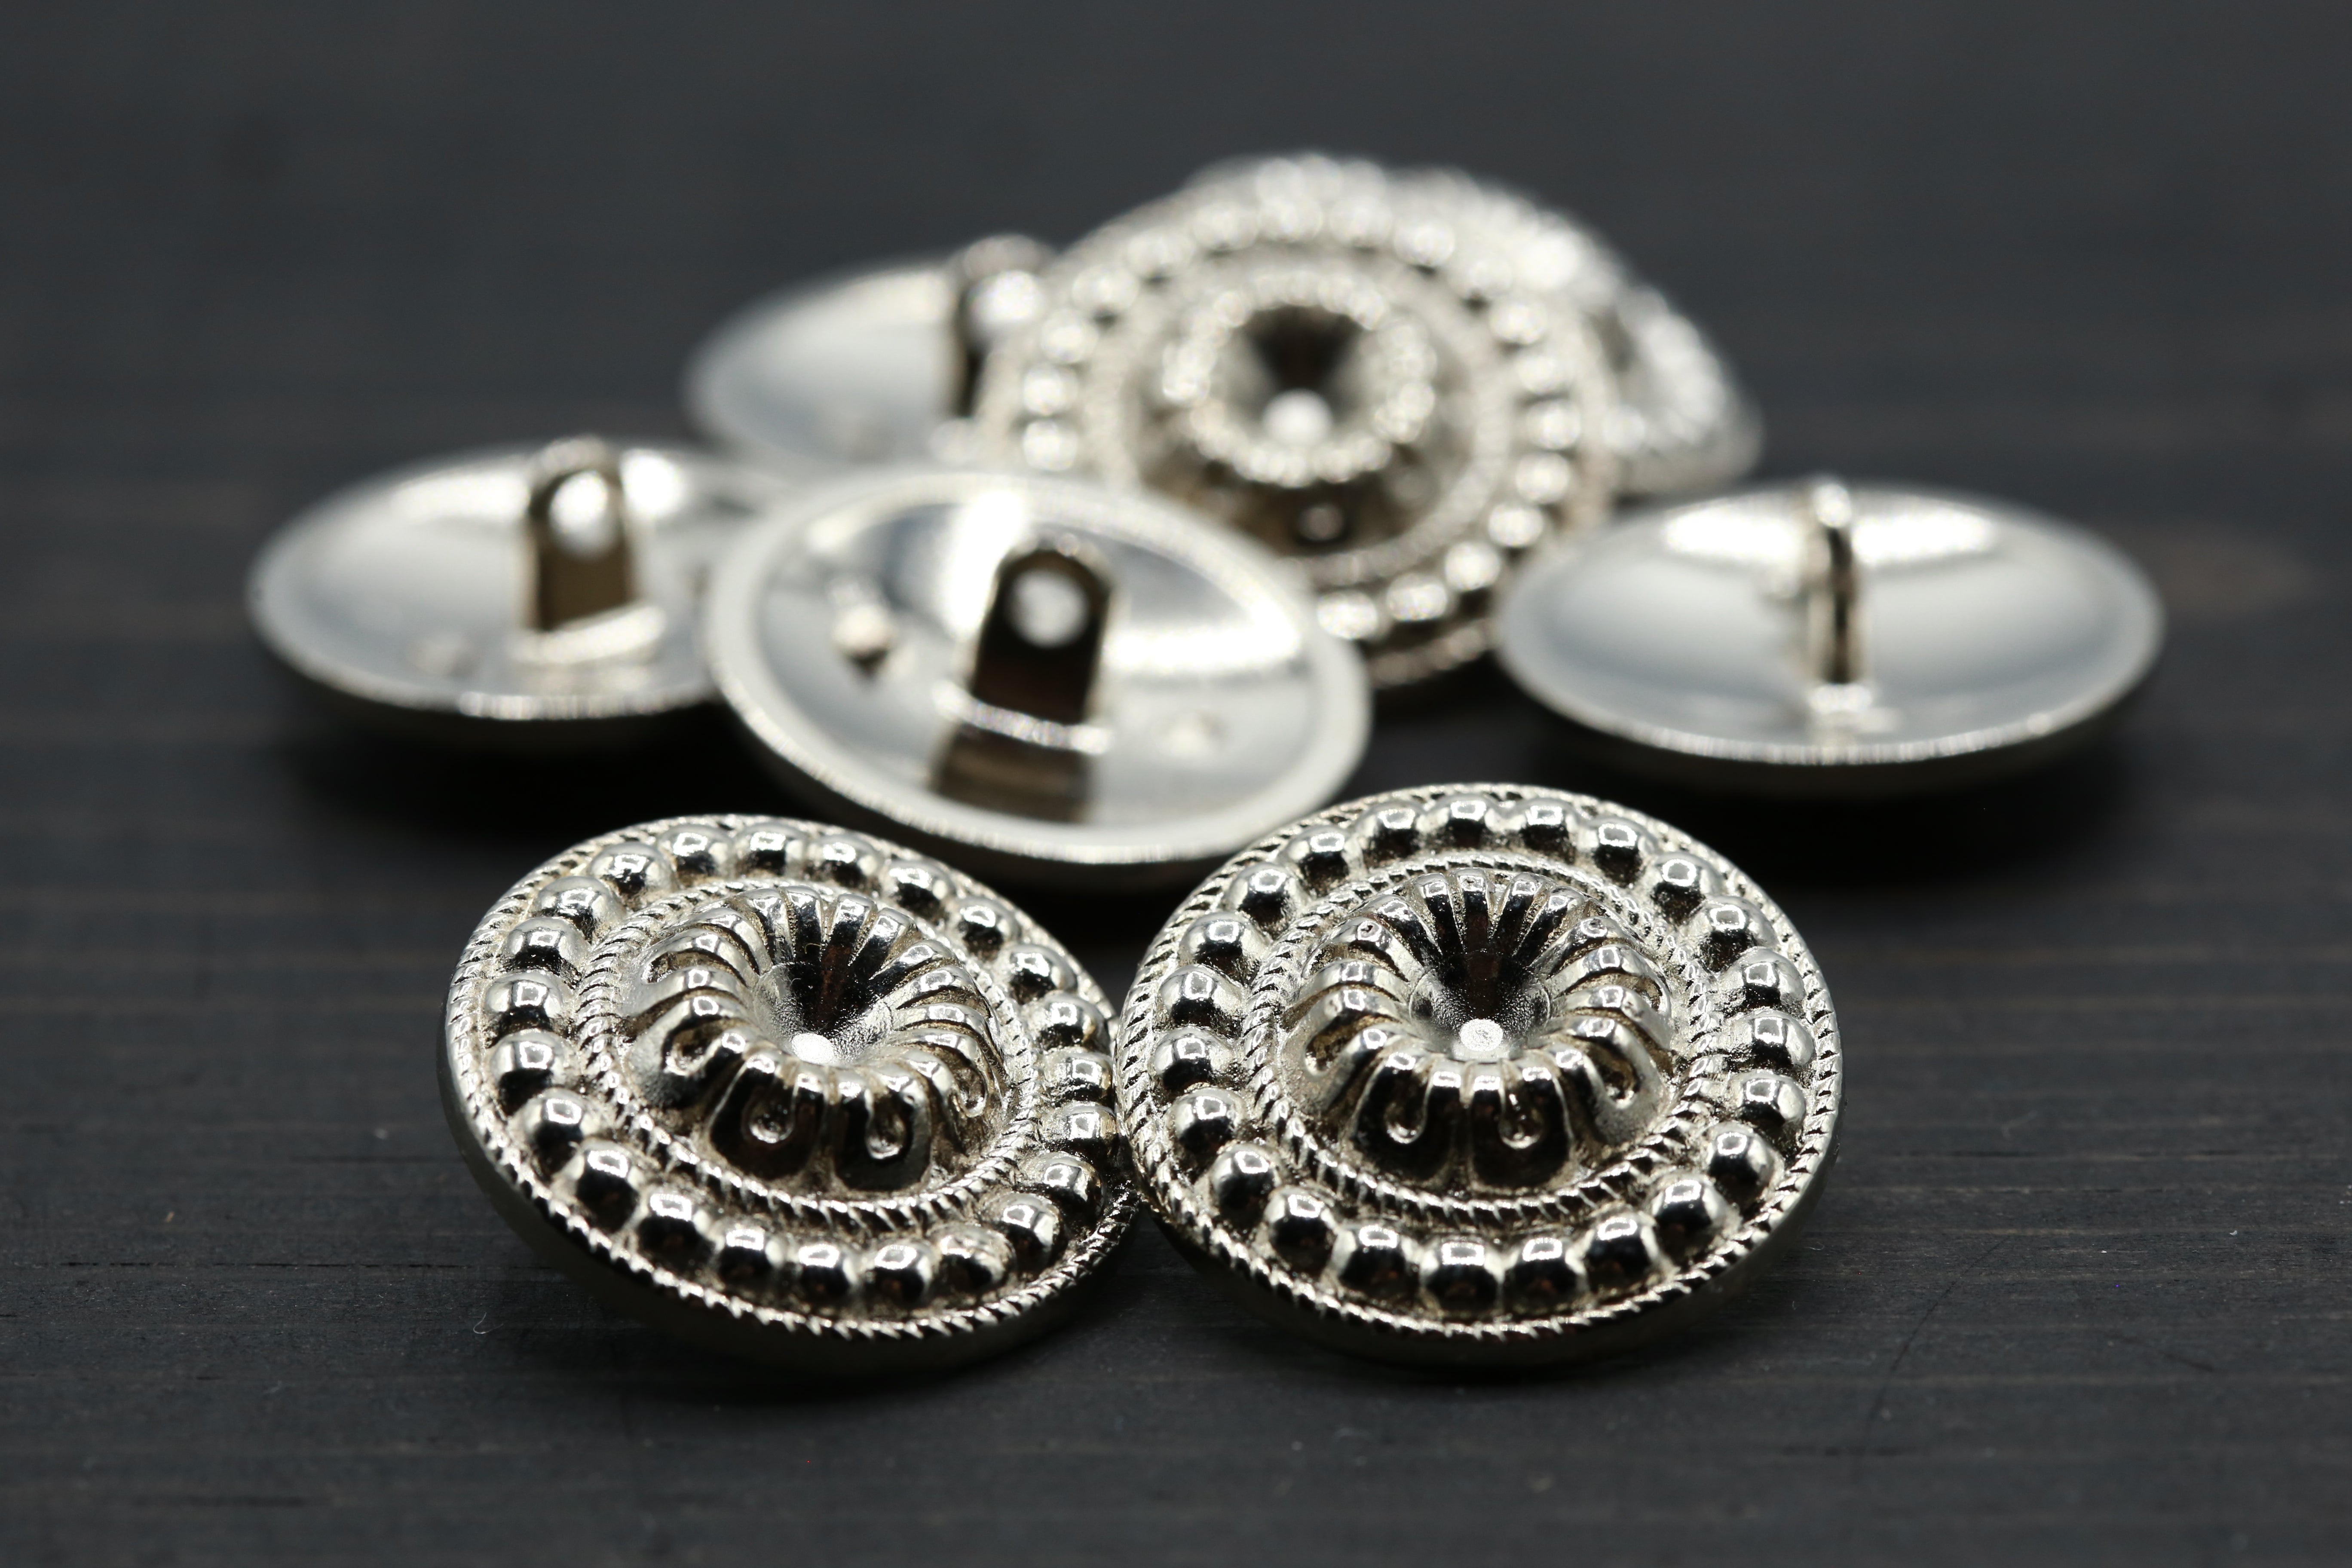 4 Antique Brass Textured Metal Button – Trim 2000 Plus